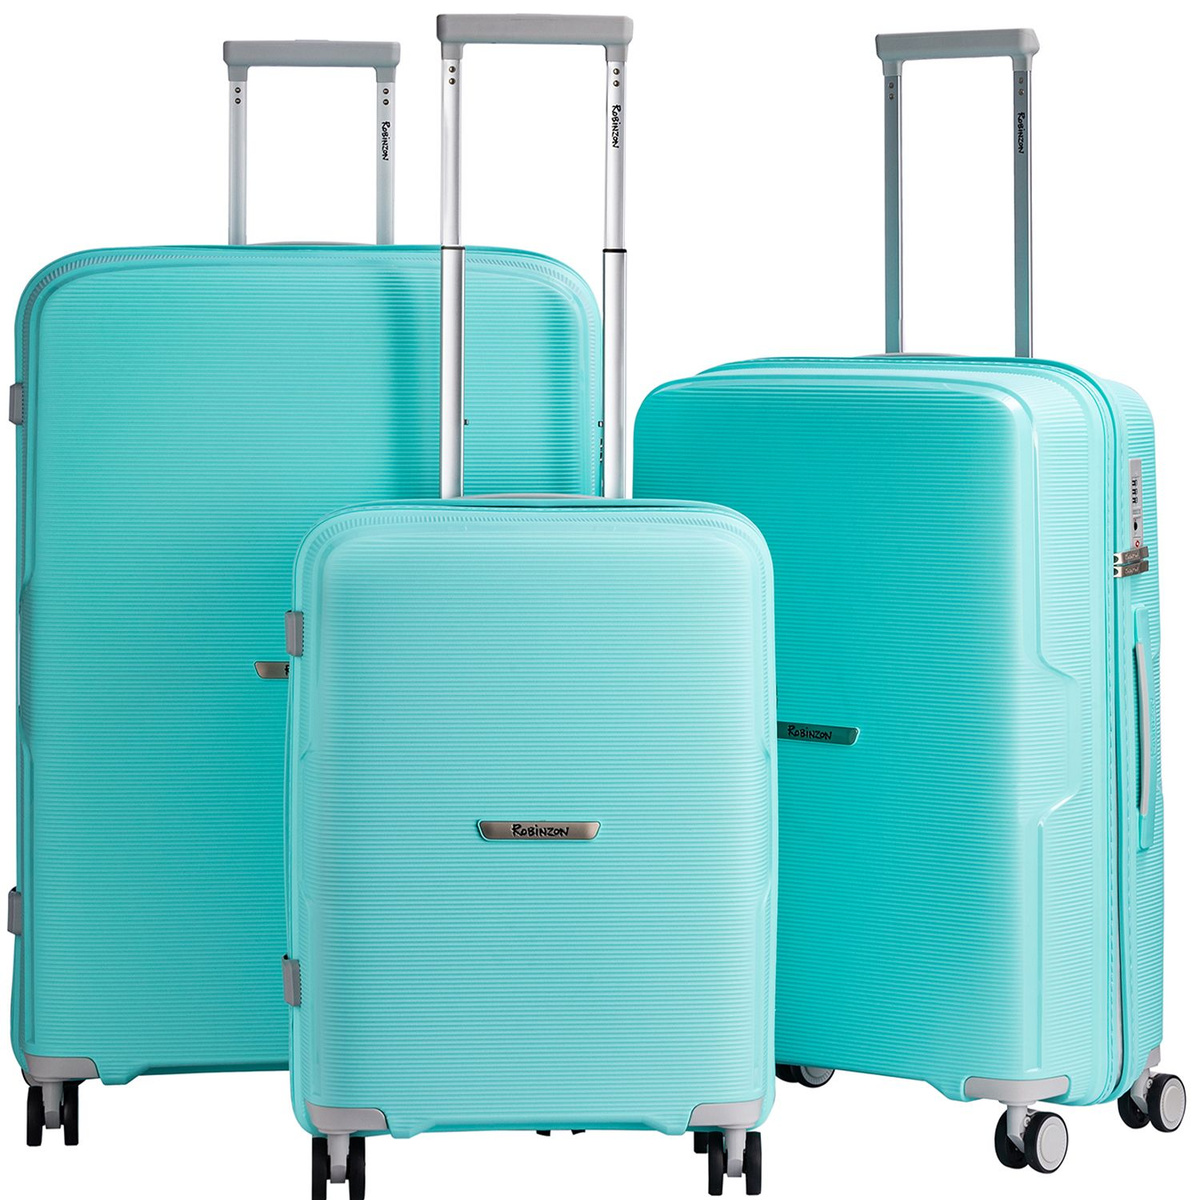 Размер чемодана большой L(70-100 см), что отлично подойдёт для длительных или семейных поездок.